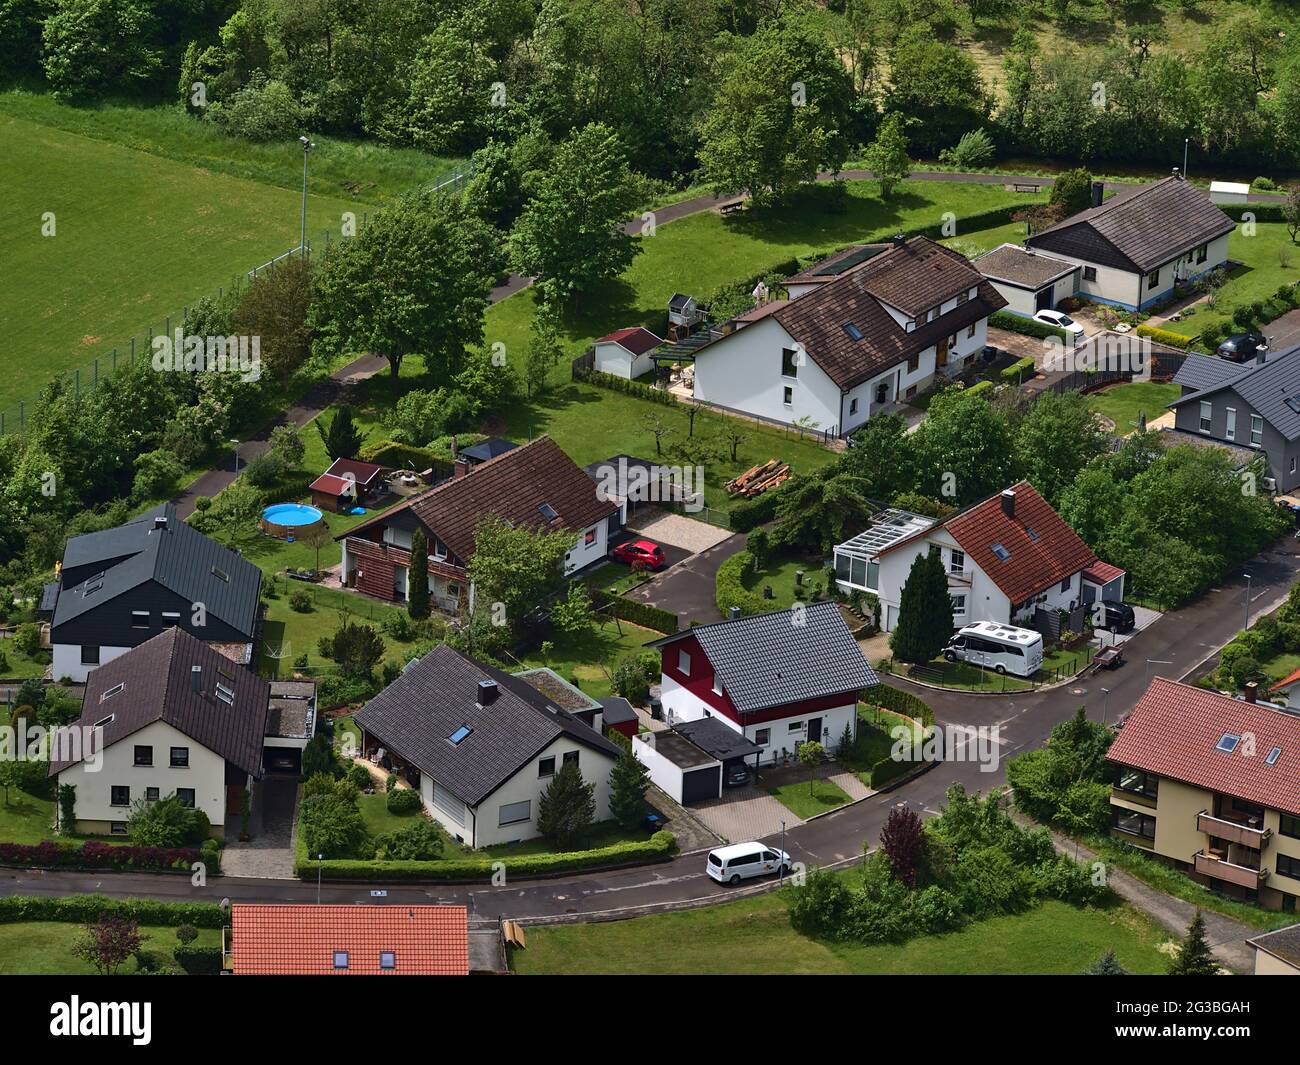 Schöne Luftaufnahme von Wohngebiet mit Einfamilienhäusern im ländlichen Dorf Honau, Lichtenstein, Schwäbische Alb, im späten Frühjahr. Stockfoto